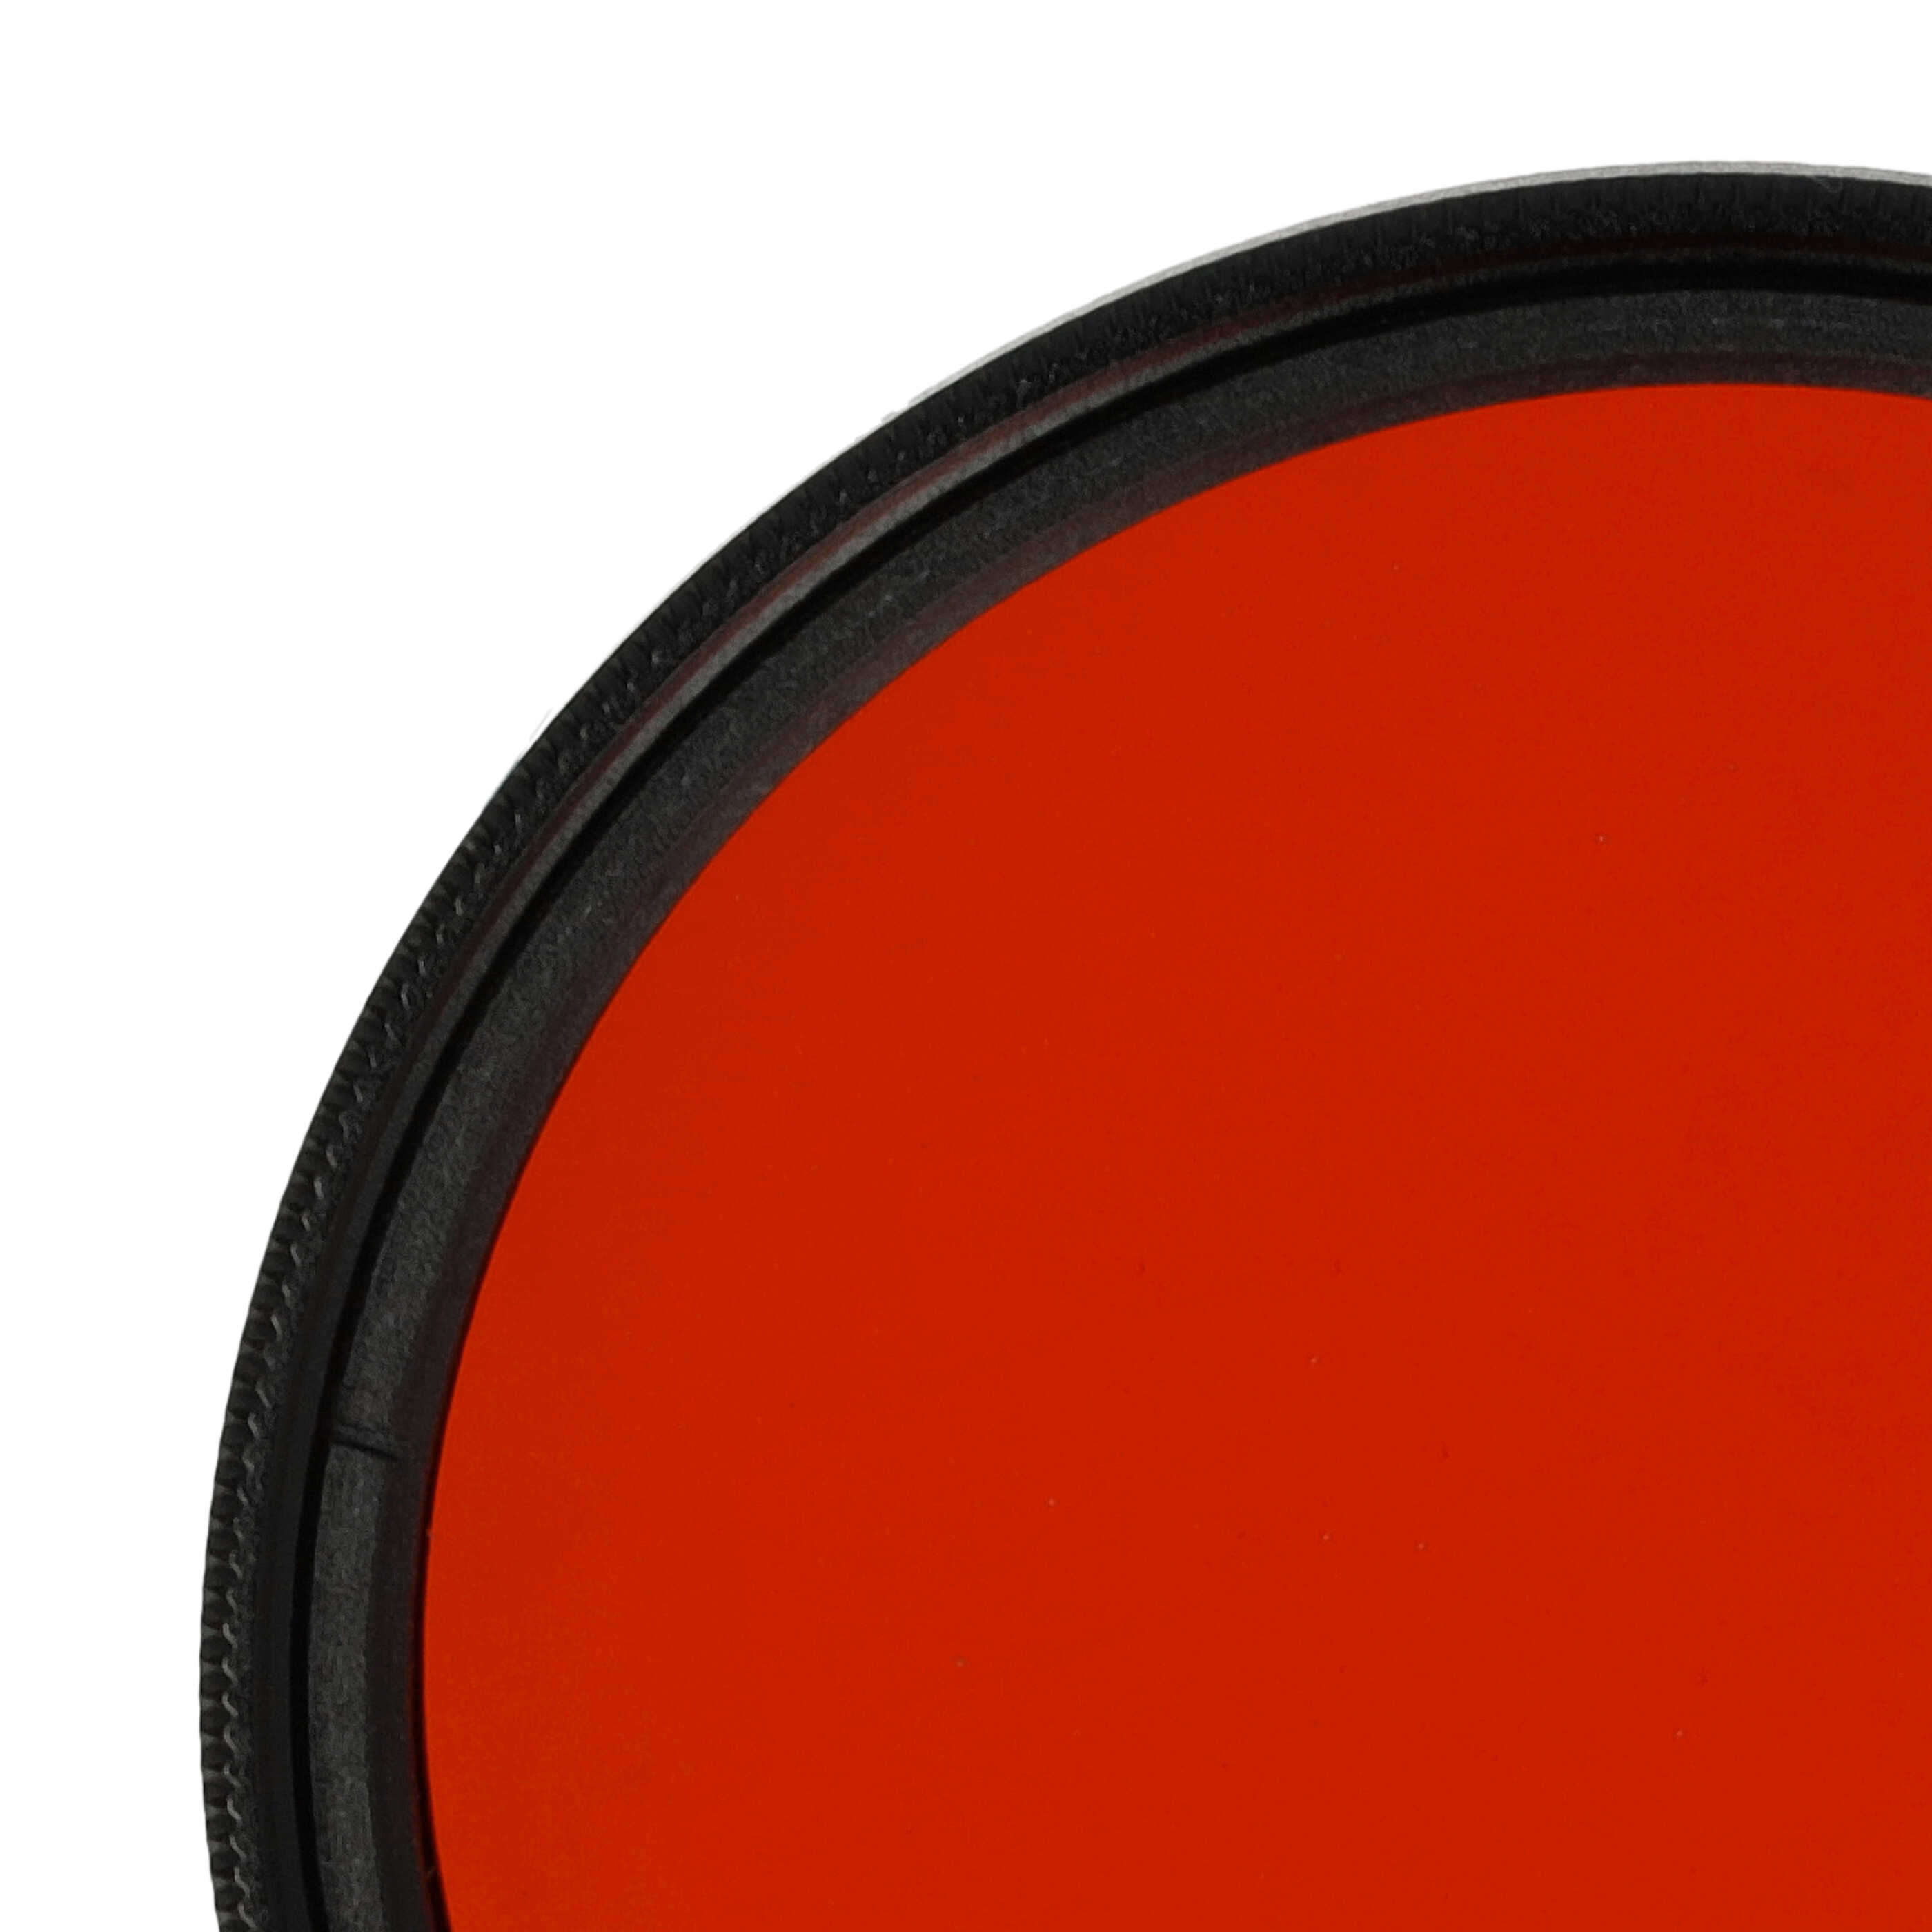 Filtro colorato per obiettivi fotocamera con filettatura da 49 mm - filtro arancione